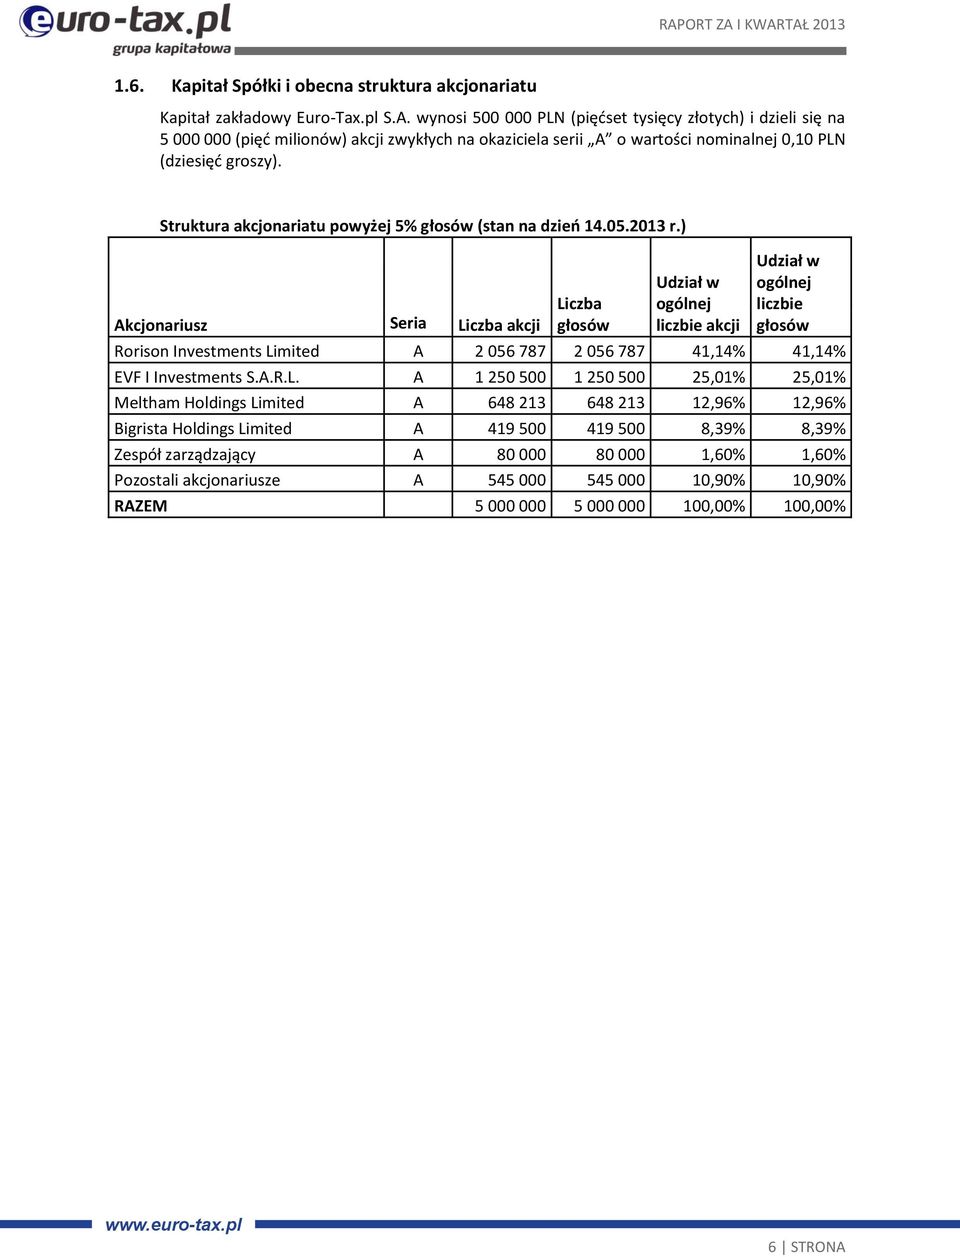 Struktura akcjonariatu powyżej 5% głosów (stan na dzień 14.05.2013 r.